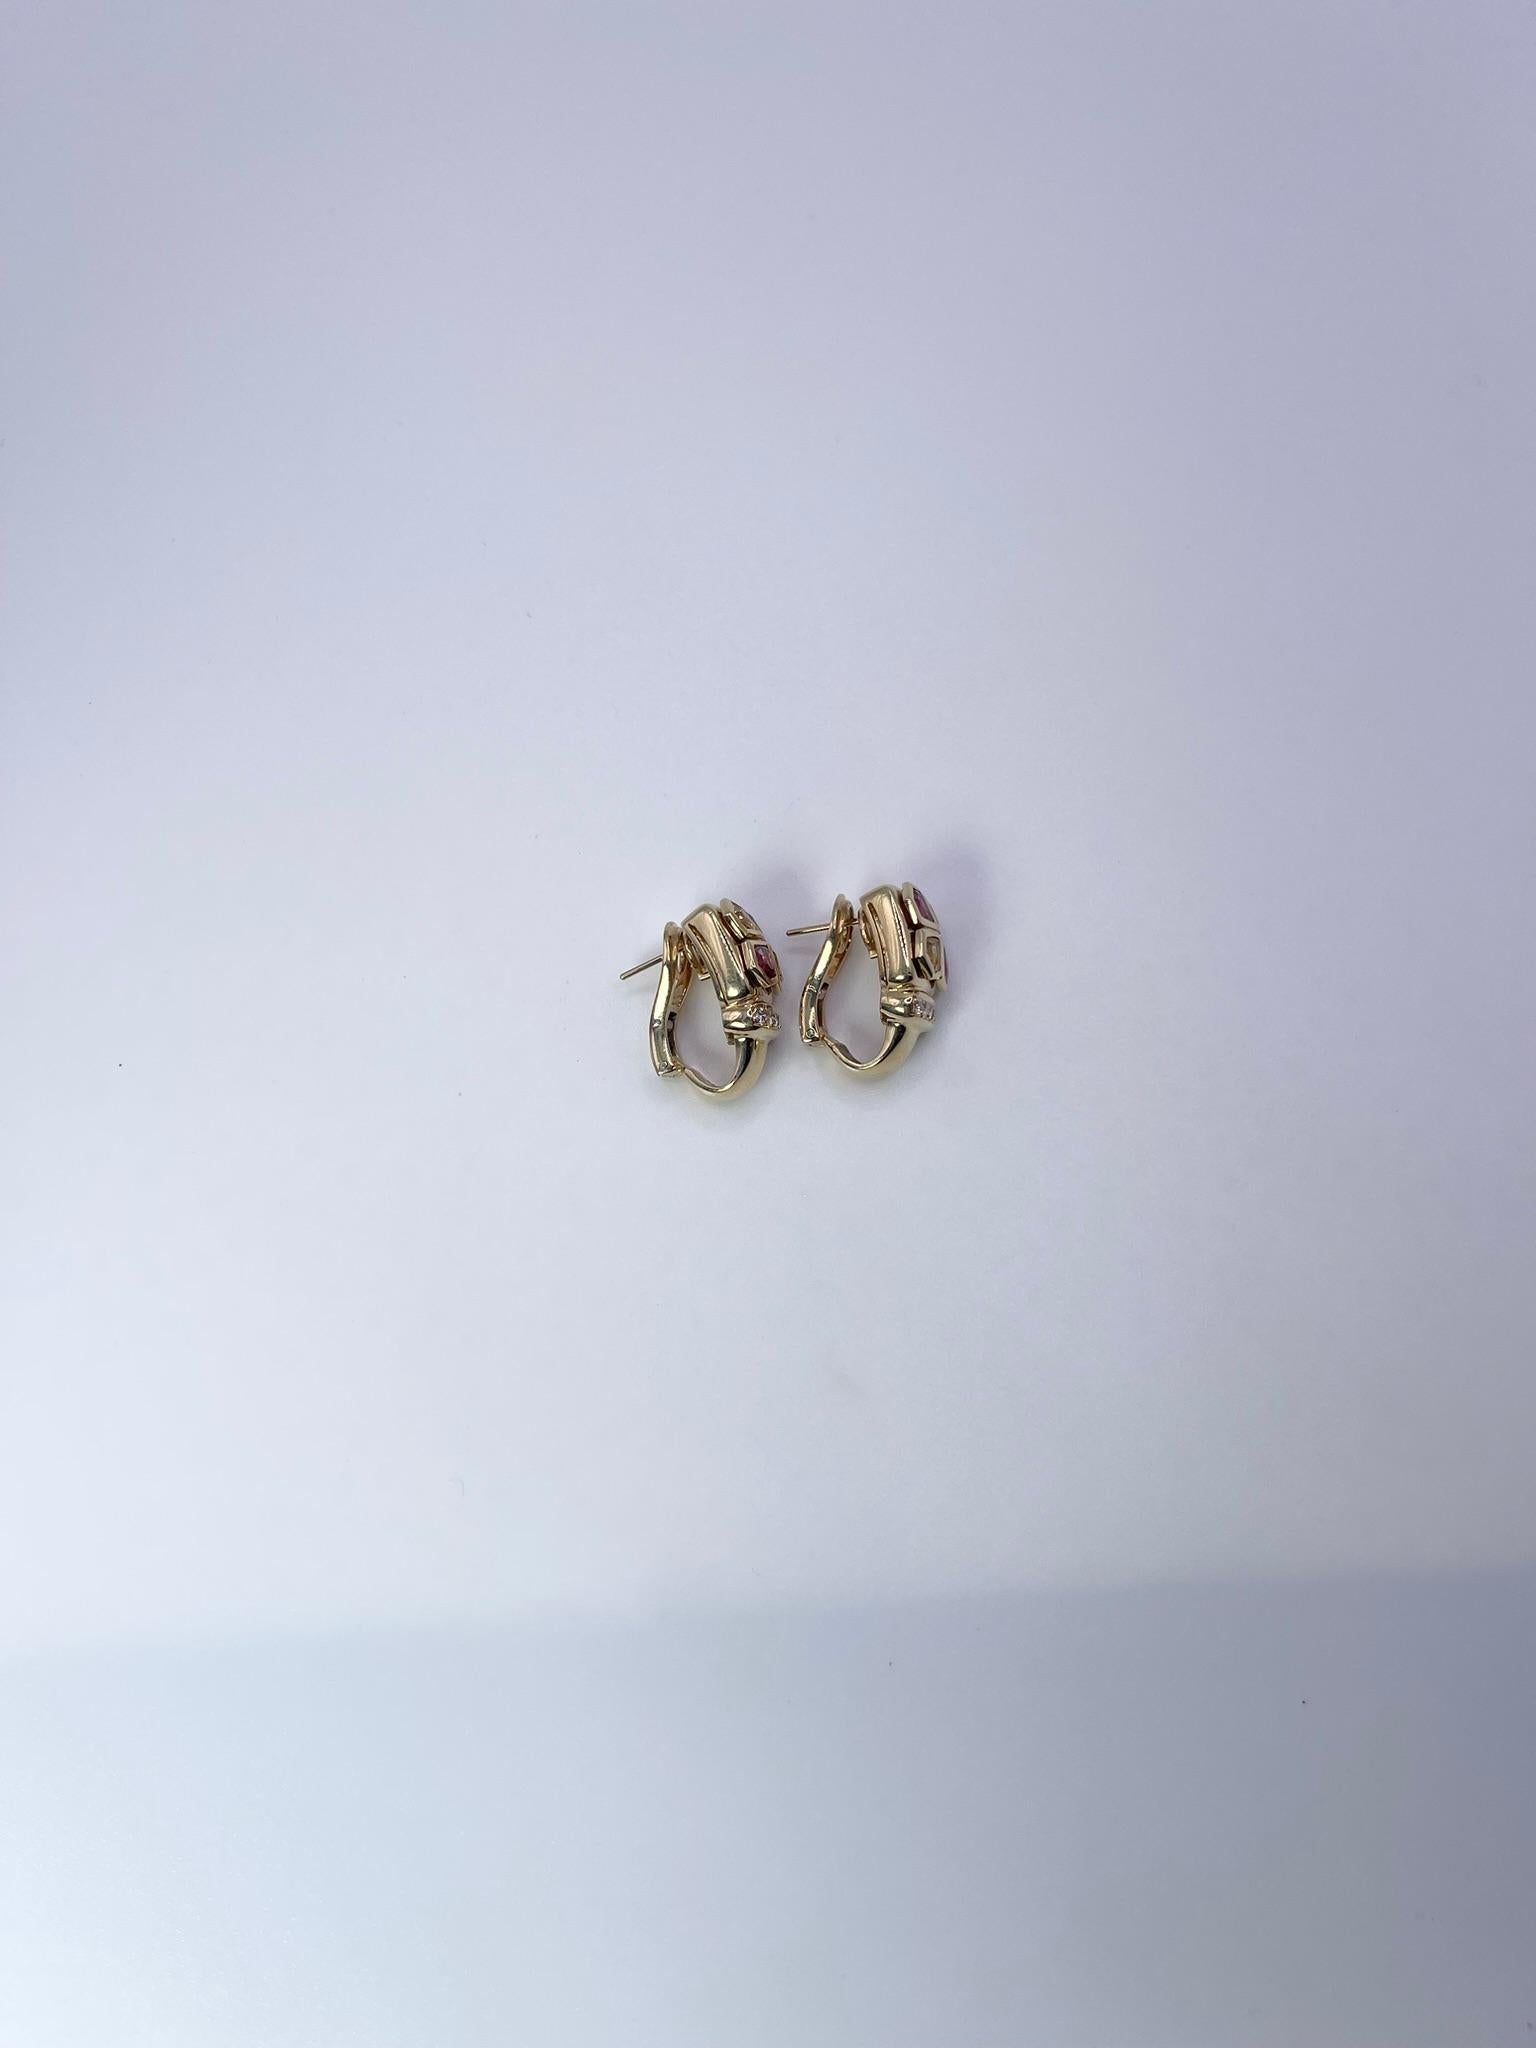 Seltene, einzigartige Diamantohrringe mit Rubinen und Saphiren. Alle Steine sind 100% natürlich und unbehandelt. Die Ohrringe haben eine Omega-Fassung und sind im Art-Déco-Stil gehalten.
Grammgewicht: 16.69gr
GOLD: 18KT Gelbgold
GRÖSSE: 20x10 mm